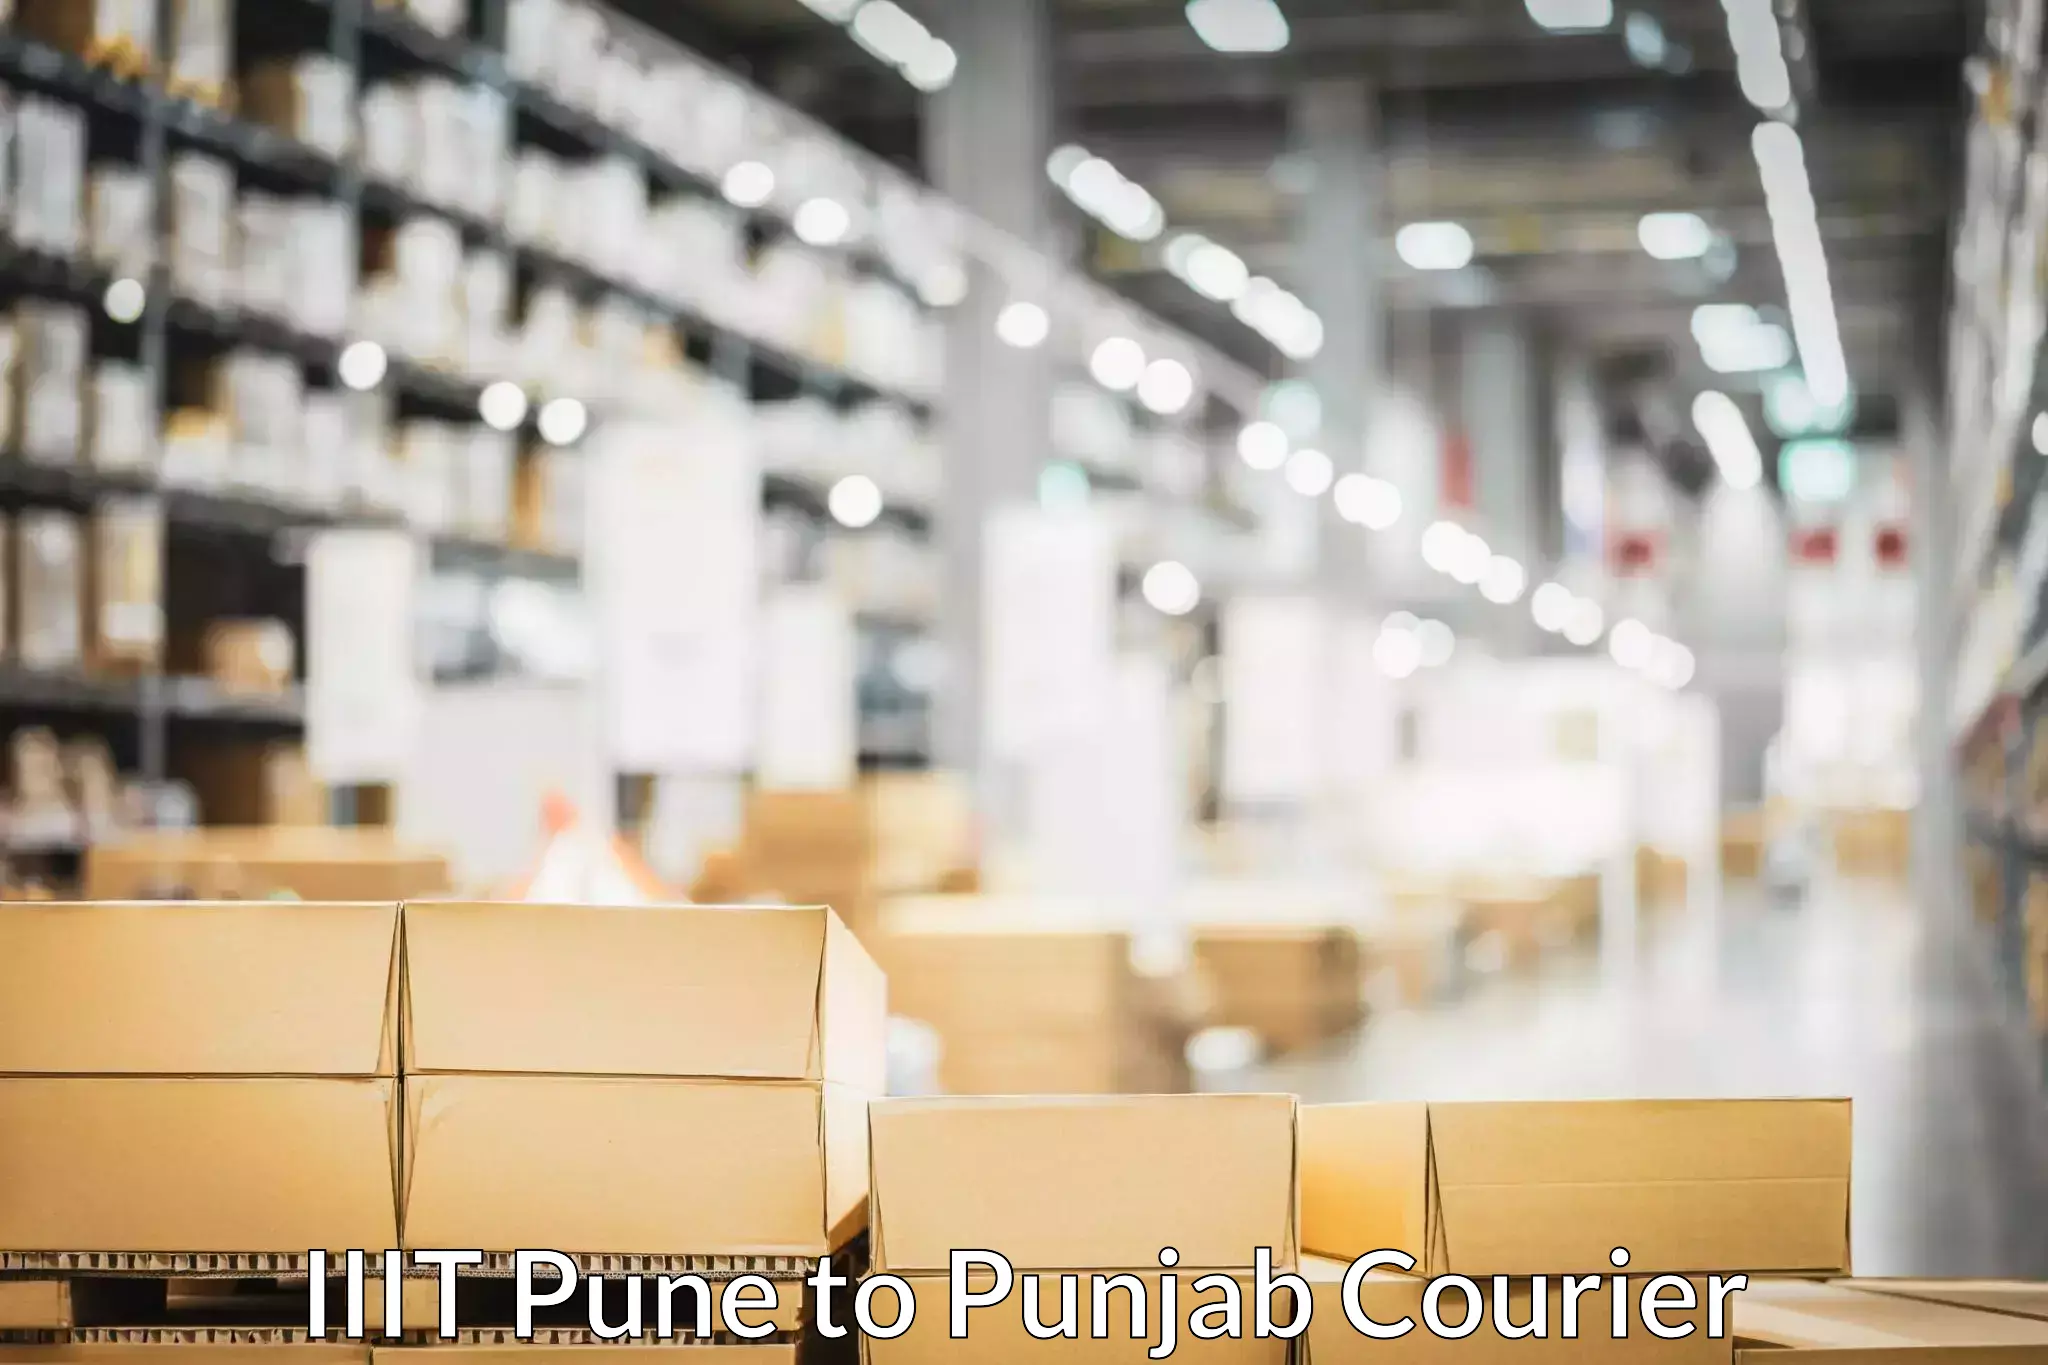 Skilled furniture transport IIIT Pune to Punjab